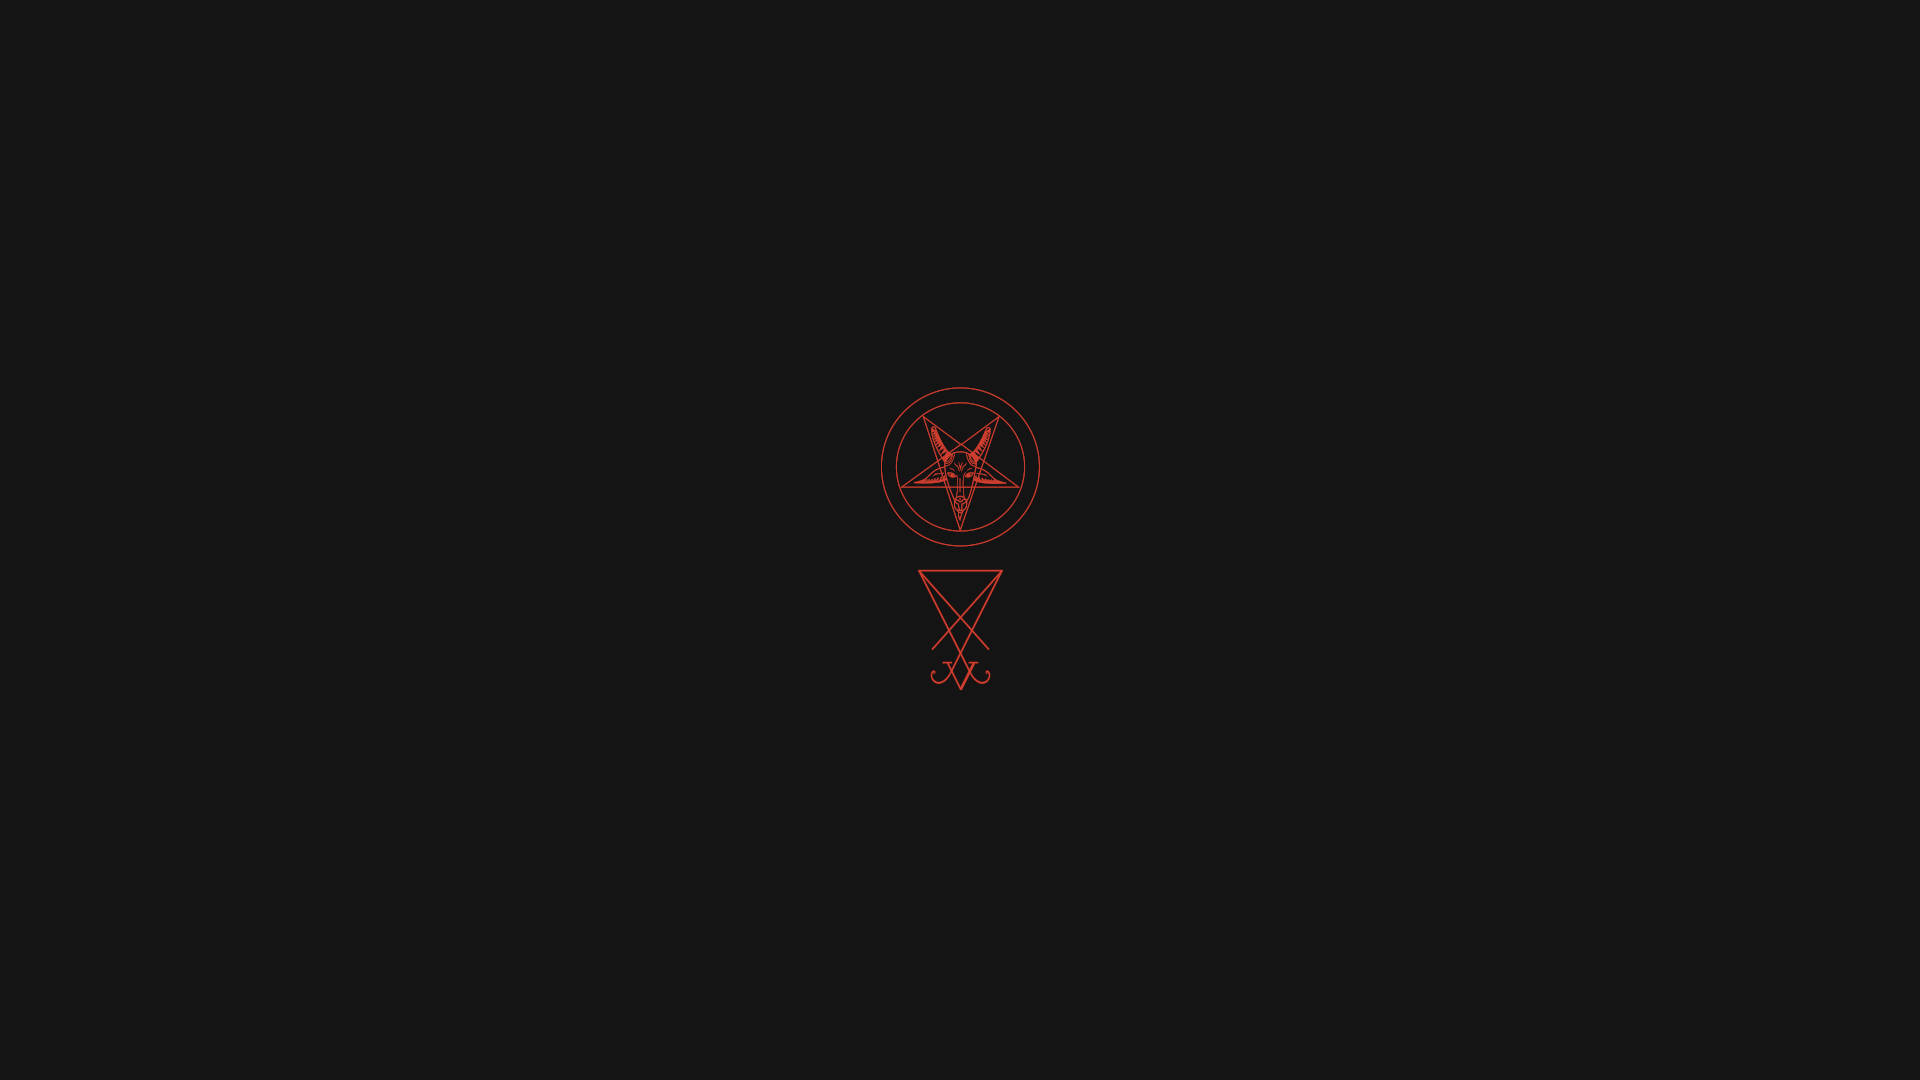 Lucifer Emblem And Pentagram Background